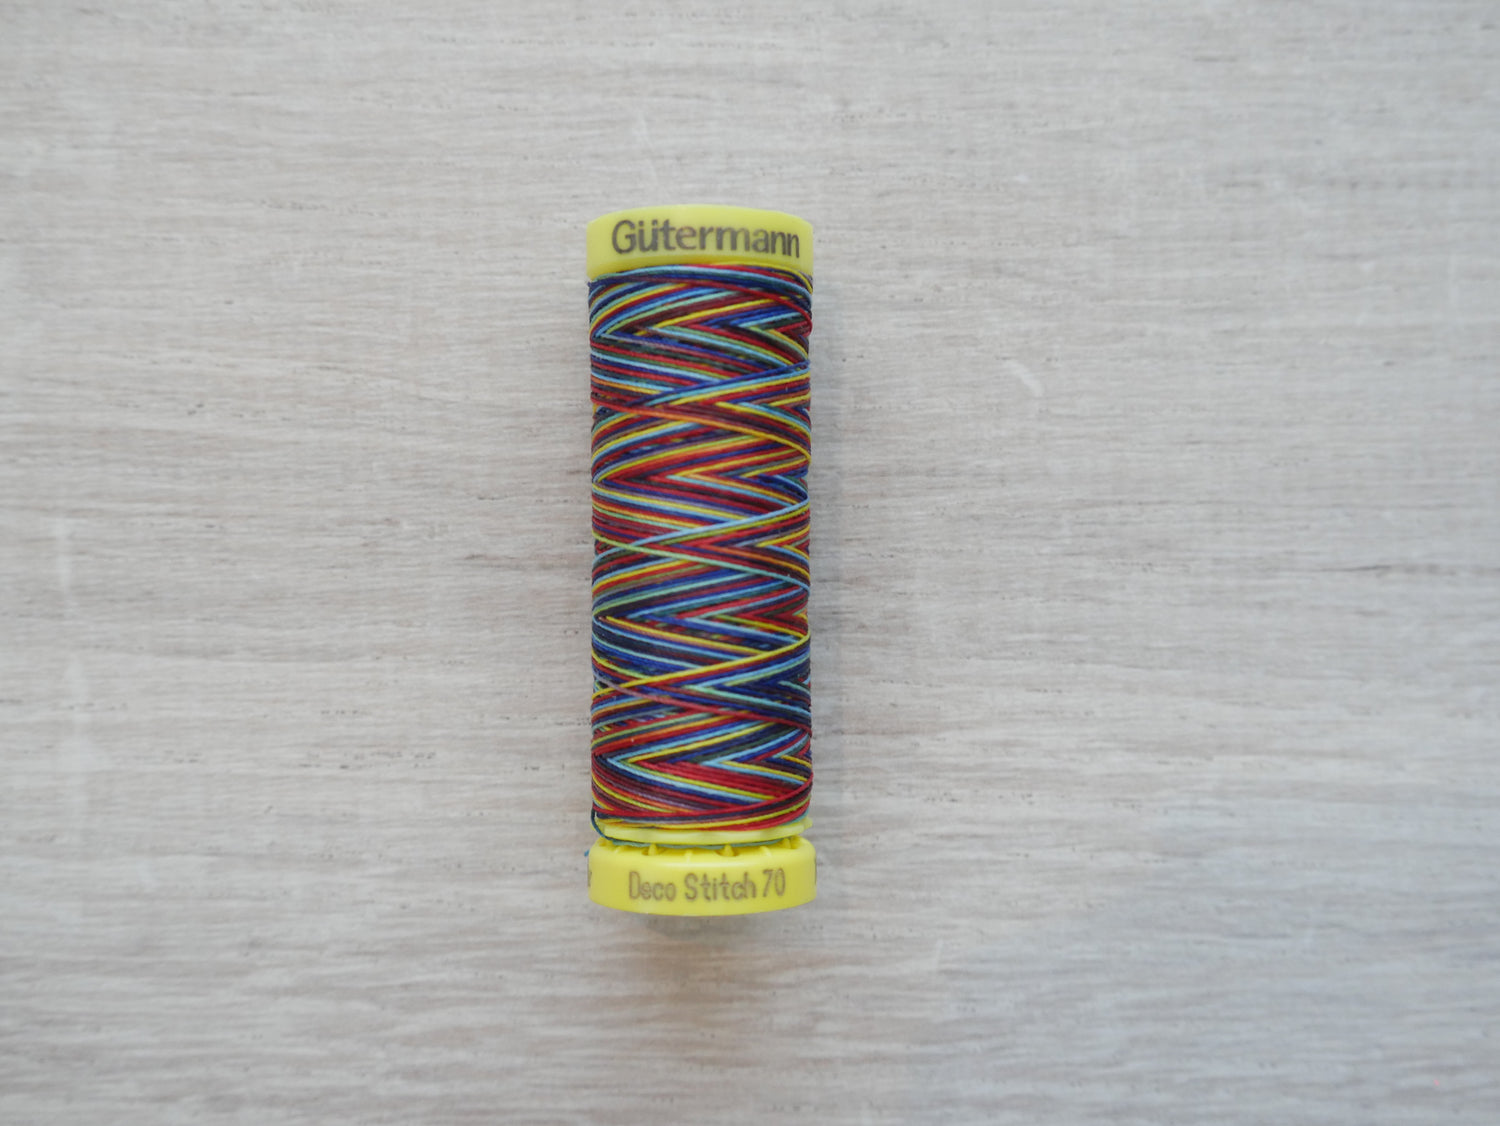 Gutermann Deco Stitch 70 Multicolour-Thread-Flying Bobbins Haberdashery